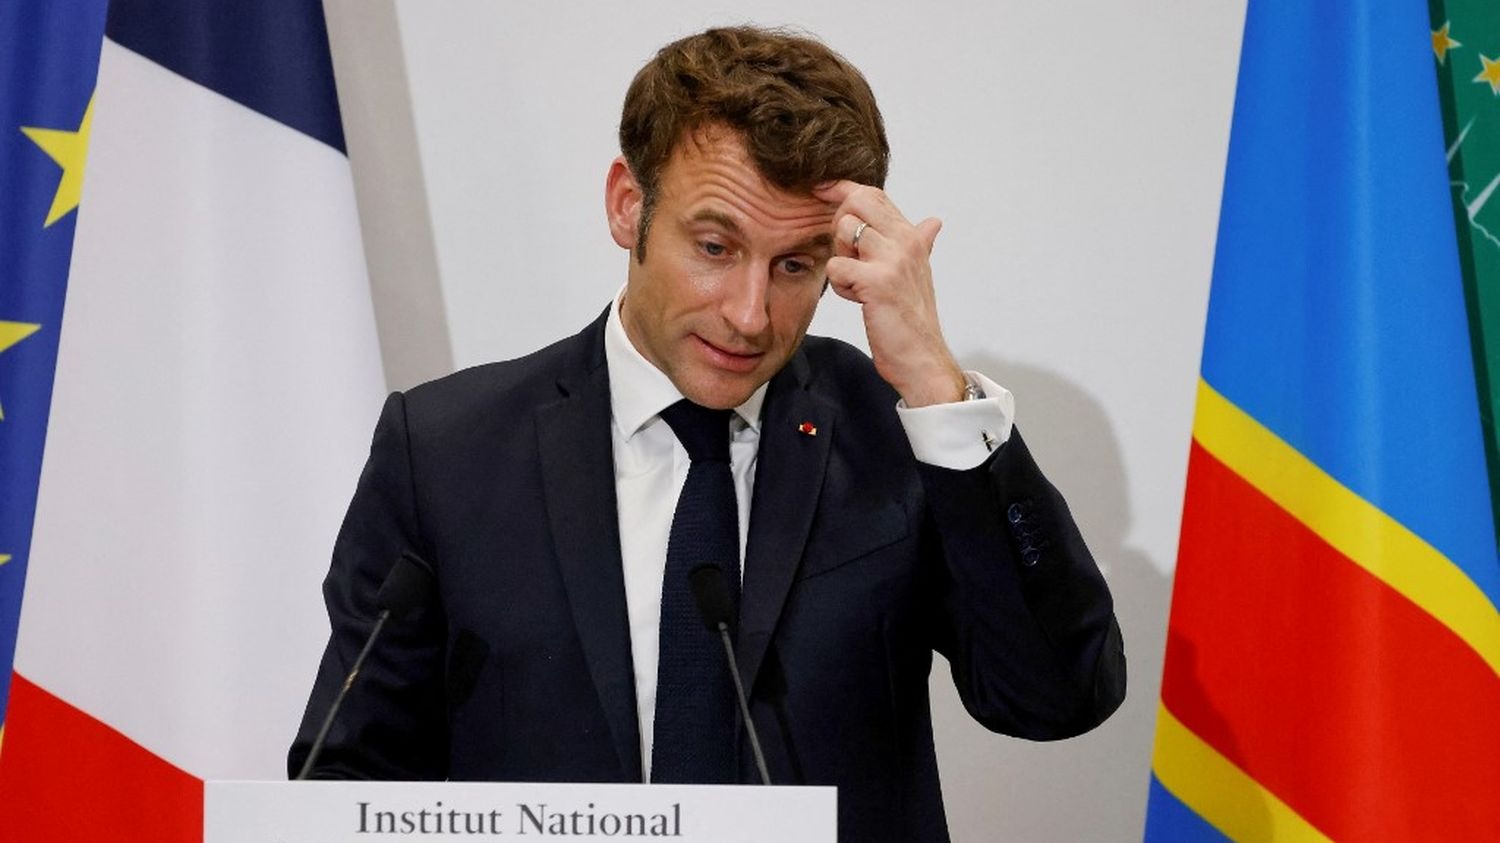 Emmanuel Macron en boîte de nuit ? La vérité sur ces images qui font jaser